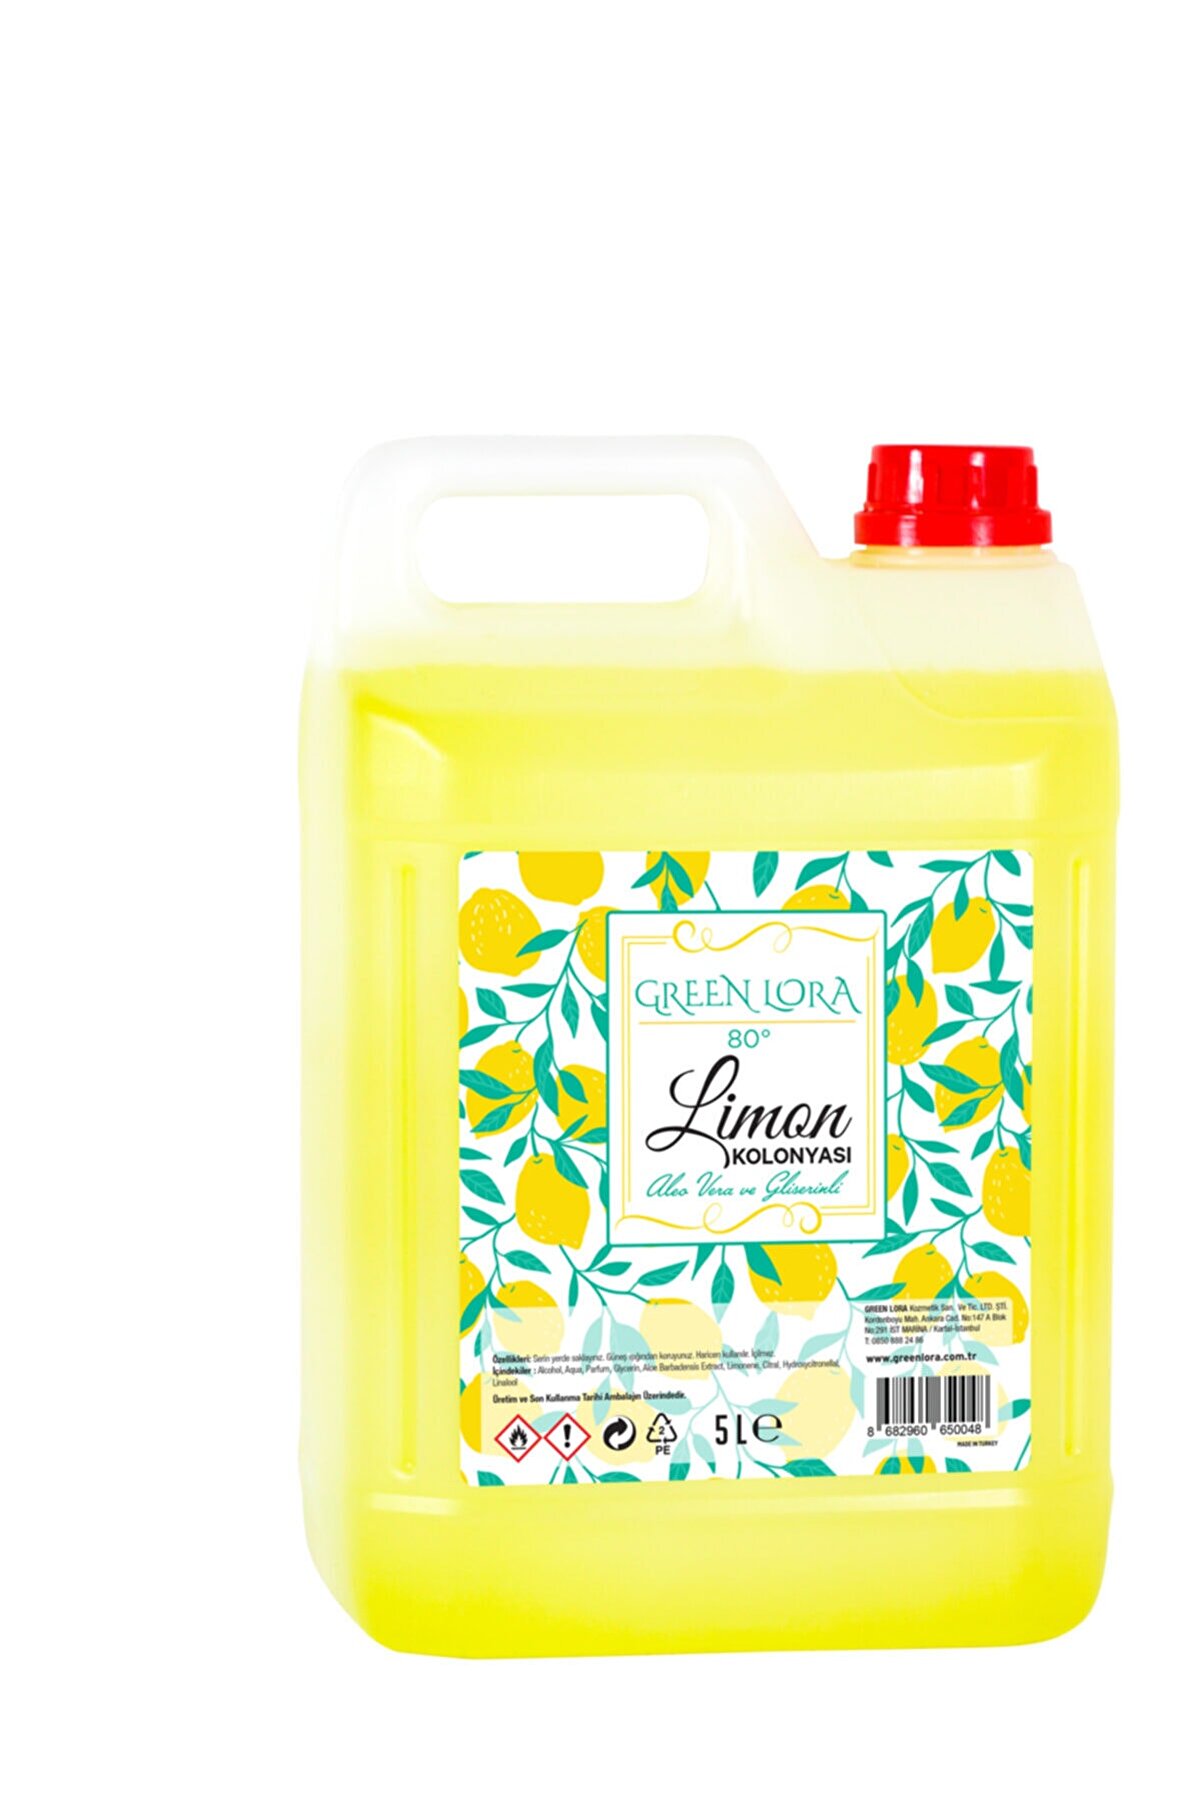 GREEN LORA Limon Kolonyası 80° Aloe Vera Ve Gliserinli 5 Lt